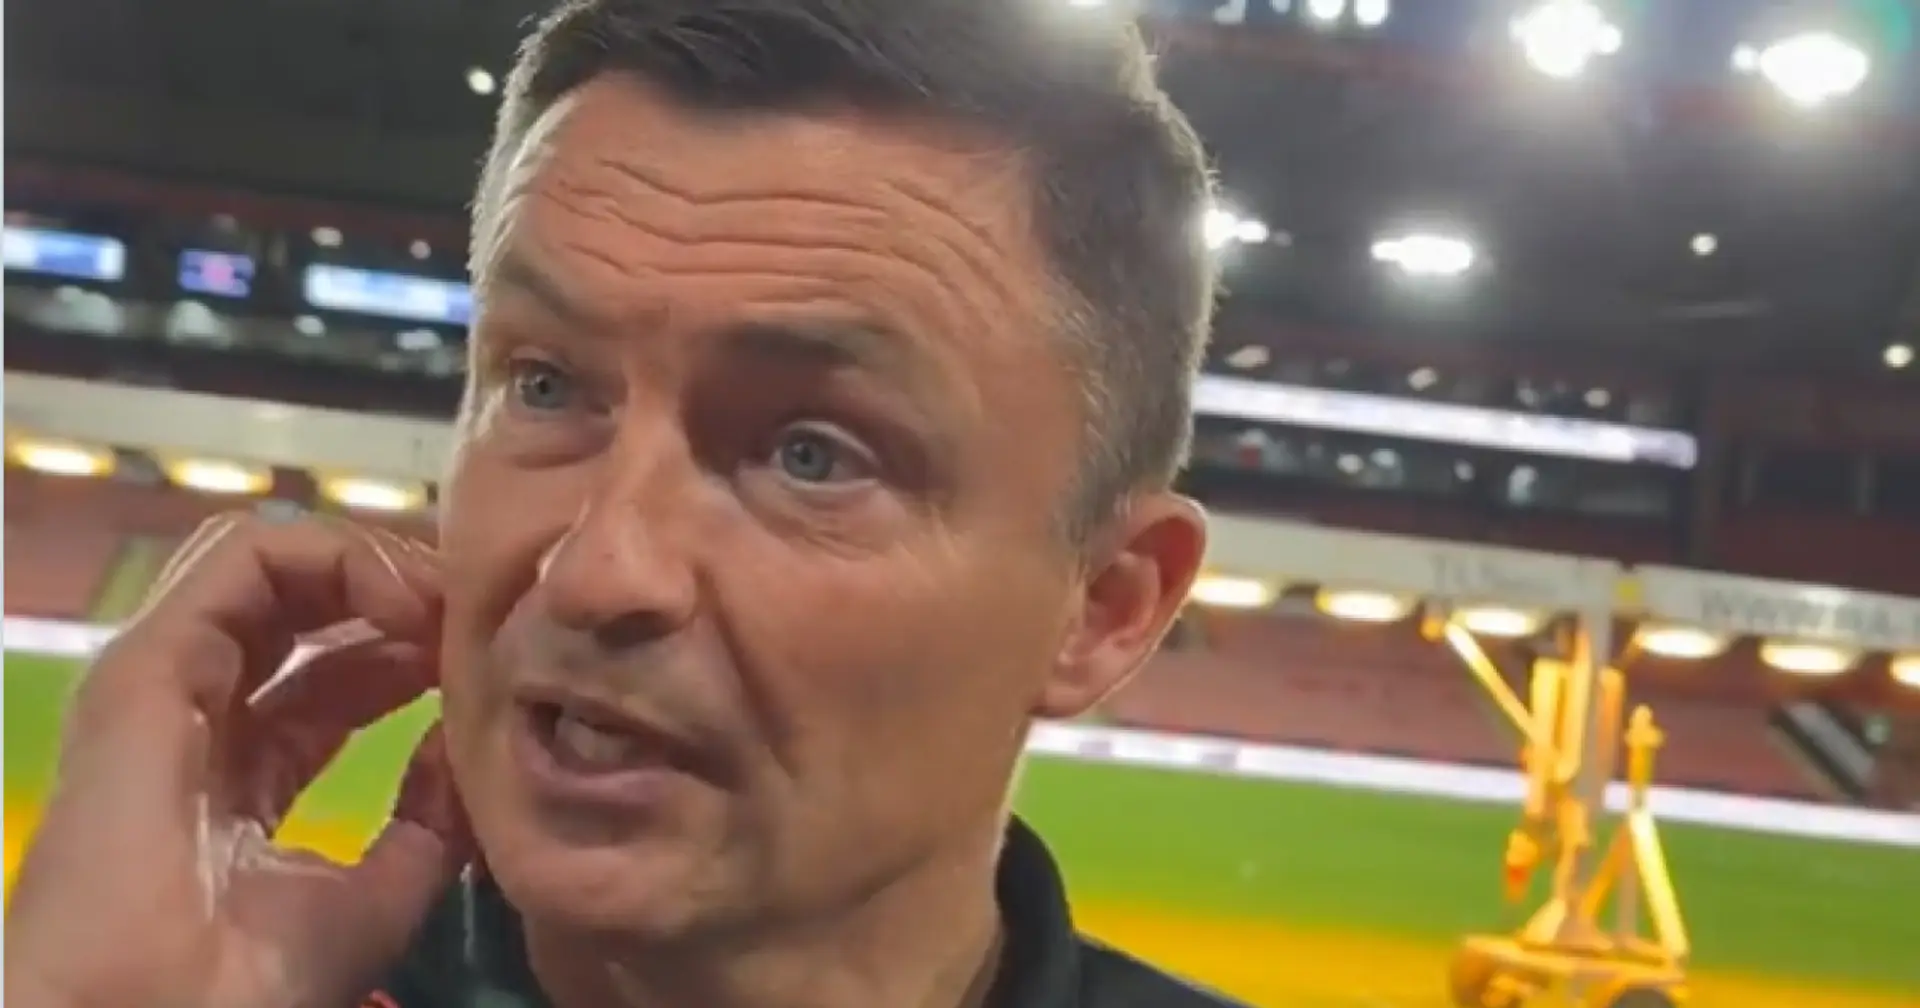 Sheffield-Trainer zur 8:0-Niederlage: "Wir dachten, es würde ein offenes Spiel werden"